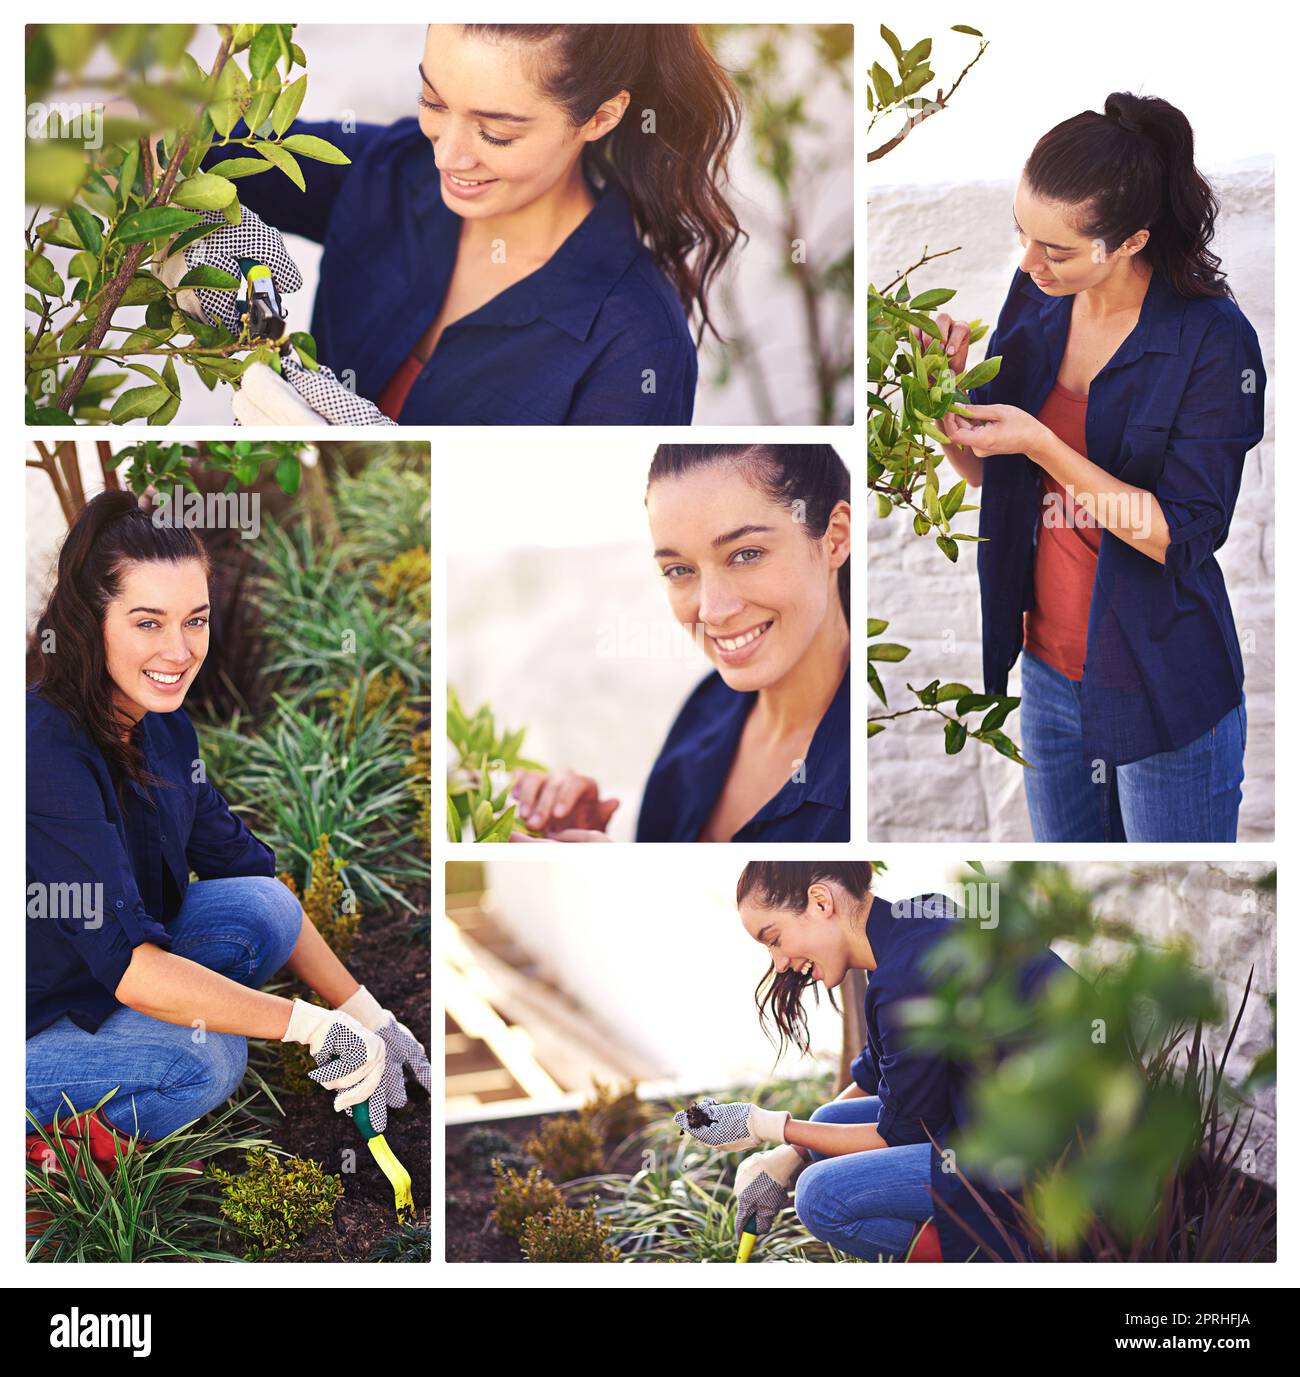 Non potete comprare la felicità ma potete comprare le piante. Immagine composita di una giovane donna attraente giardinaggio. Foto Stock